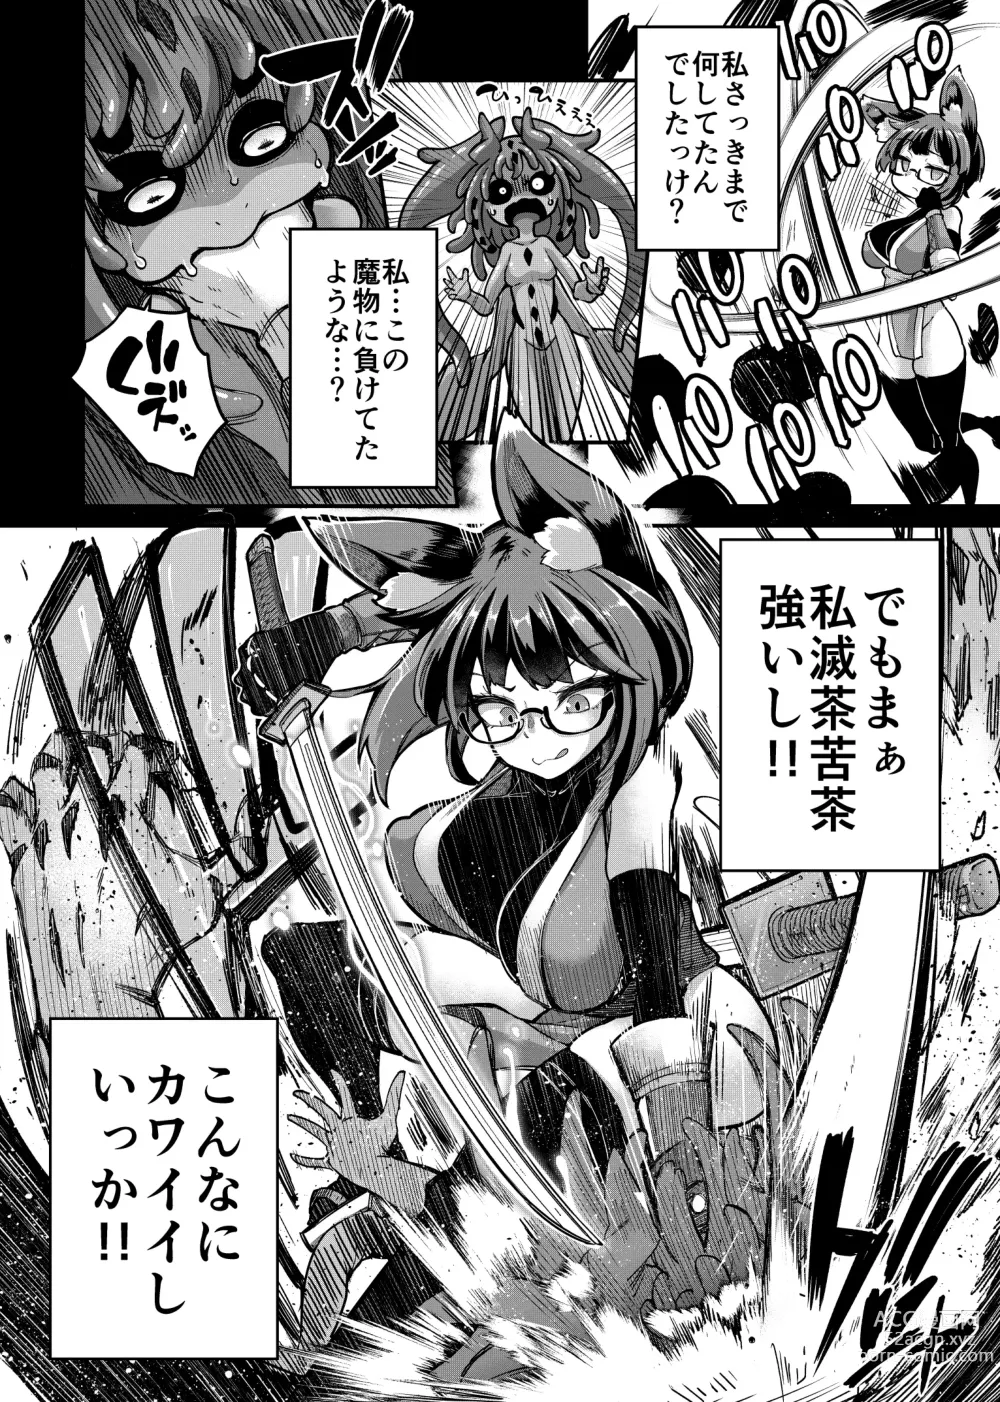 Page 13 of doujinshi Rizinetta VS jishin dungeon 2